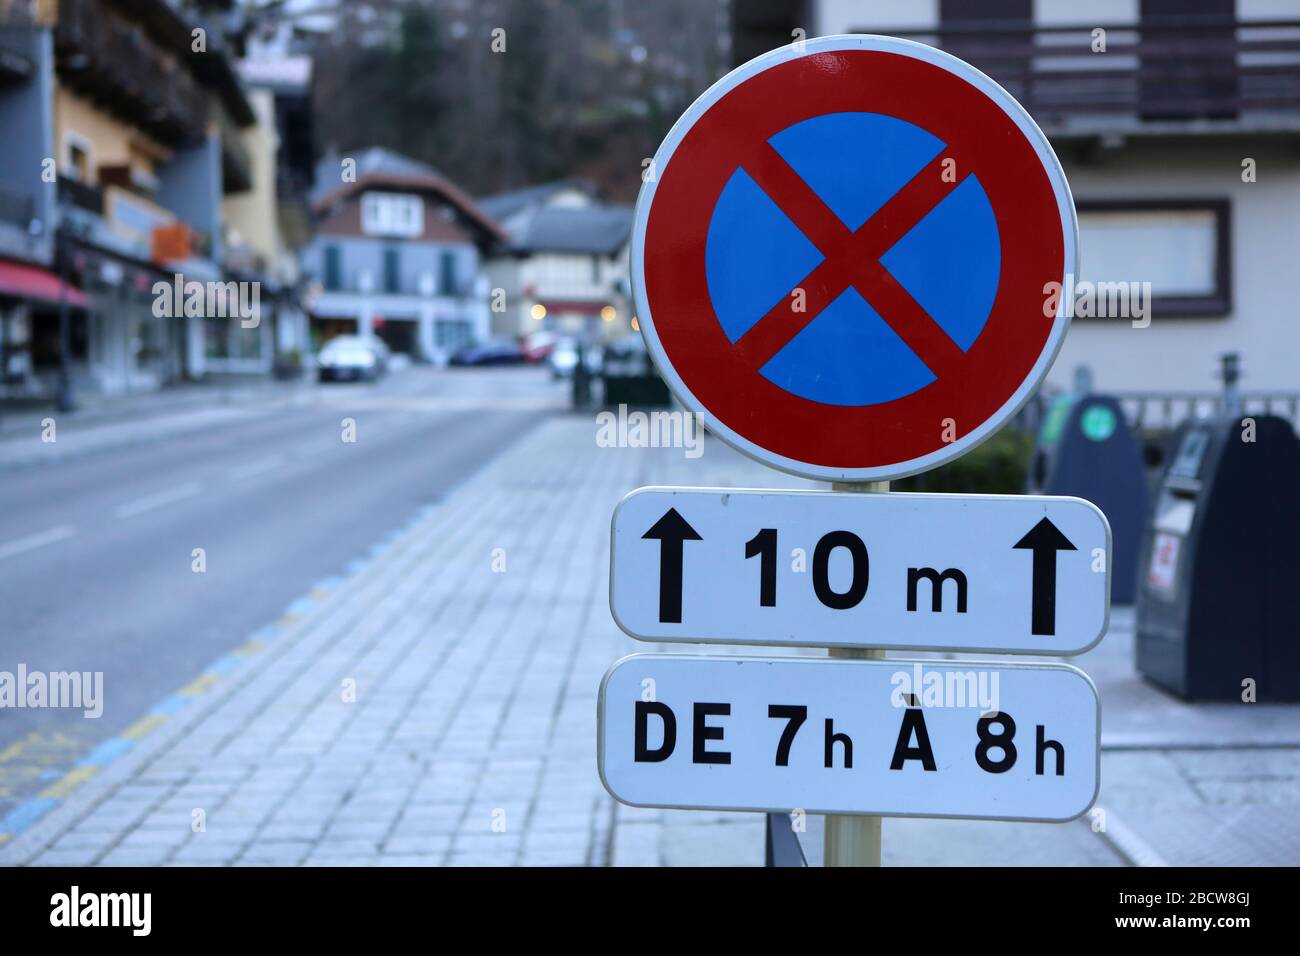 Signalisation routière : interdiction de stationner de 7h à 8h. Saint-Gervais-les-Bains. Haute-Savoie. France. Stock Photo